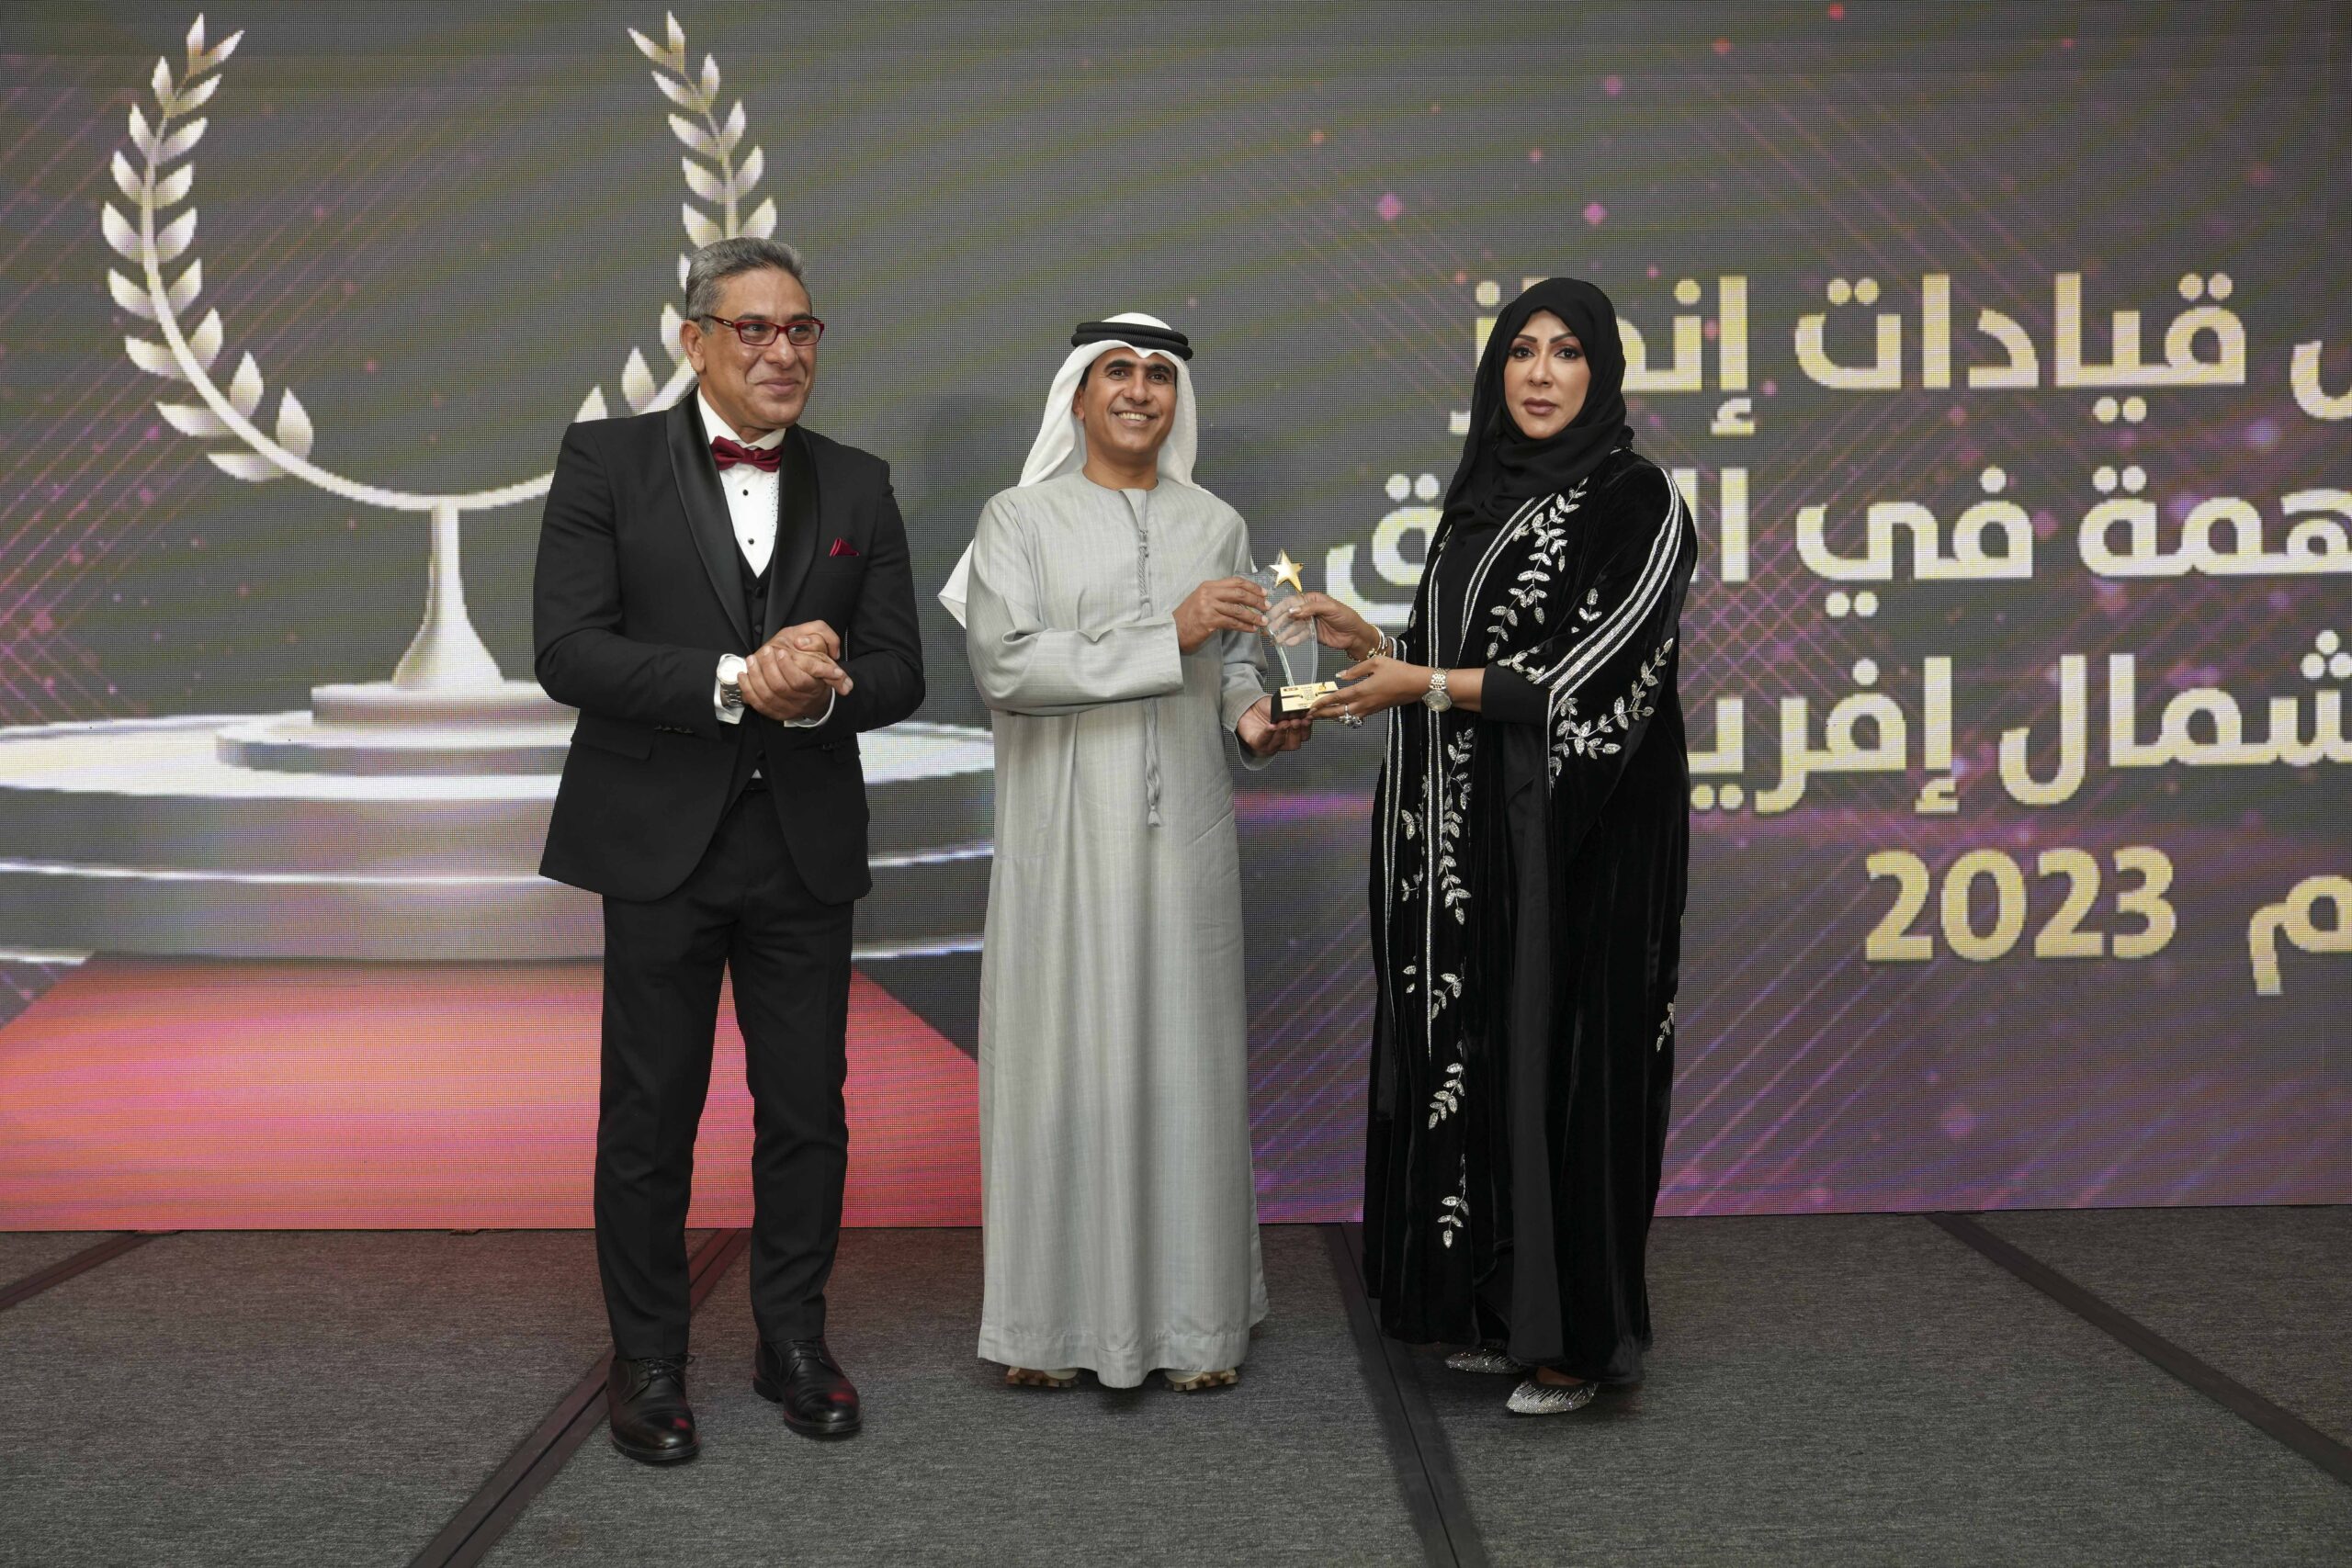 الإماراتية  شريفة مبارك المزروقي  تحصد «جائزة» مجلة استثمارات الإماراتية لـ (( أفضل مبادرة نسائية في دعم المرأة الإماراتية للعام 2023 ))